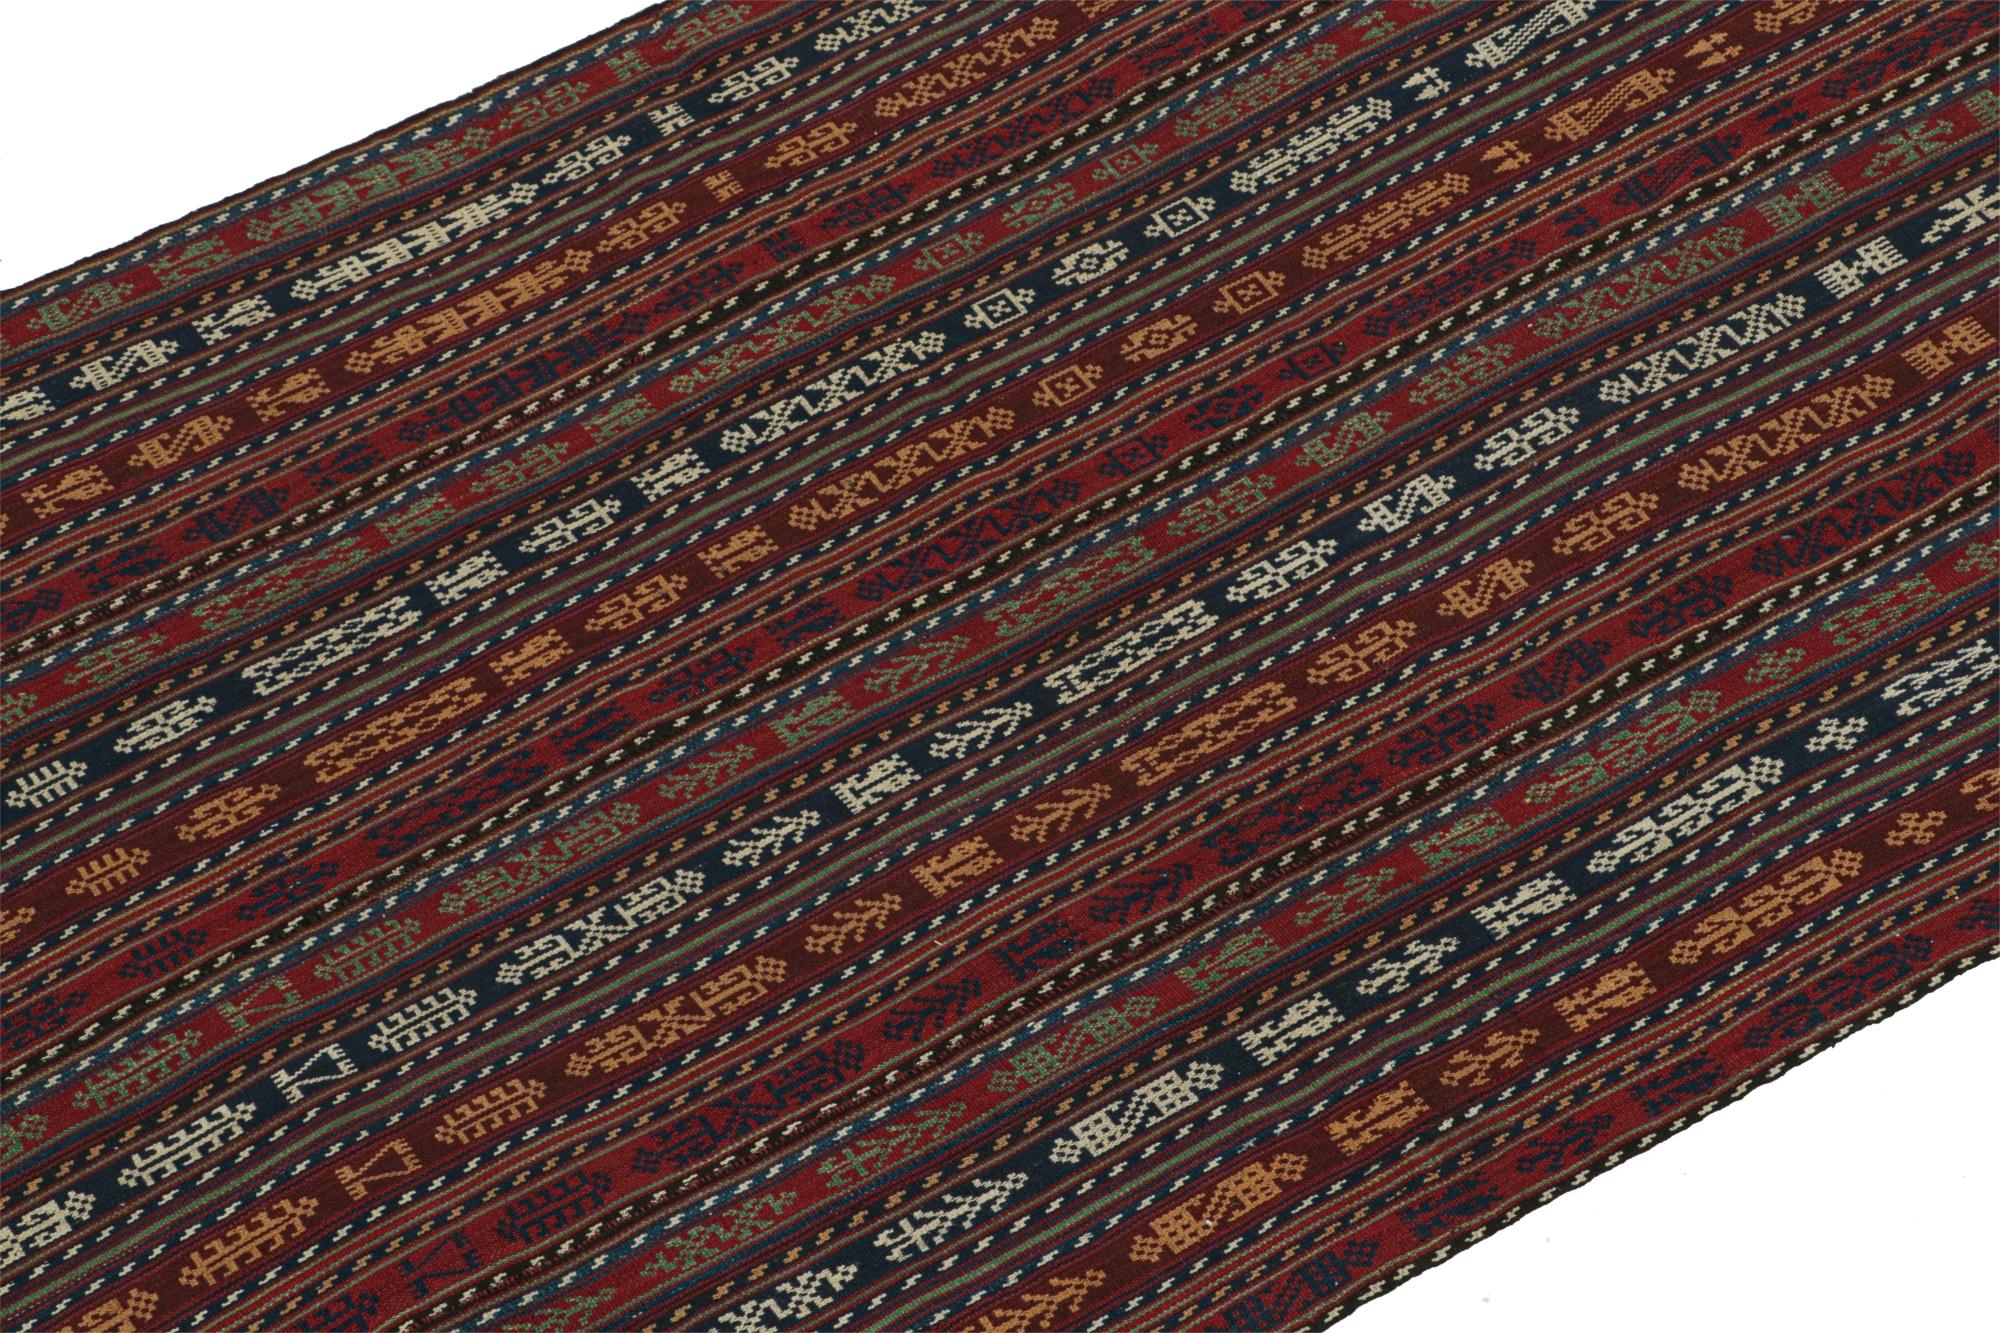 Provenant de la tribu Shahsavan, ce chemin de table en kilim persan vintage 3x6 est tissé à la main en laine et date des années 1950-1960.

Sur le Design :

Spécifiquement un Shahsavan Jajim, le tissage plat présente une version plus distincte du